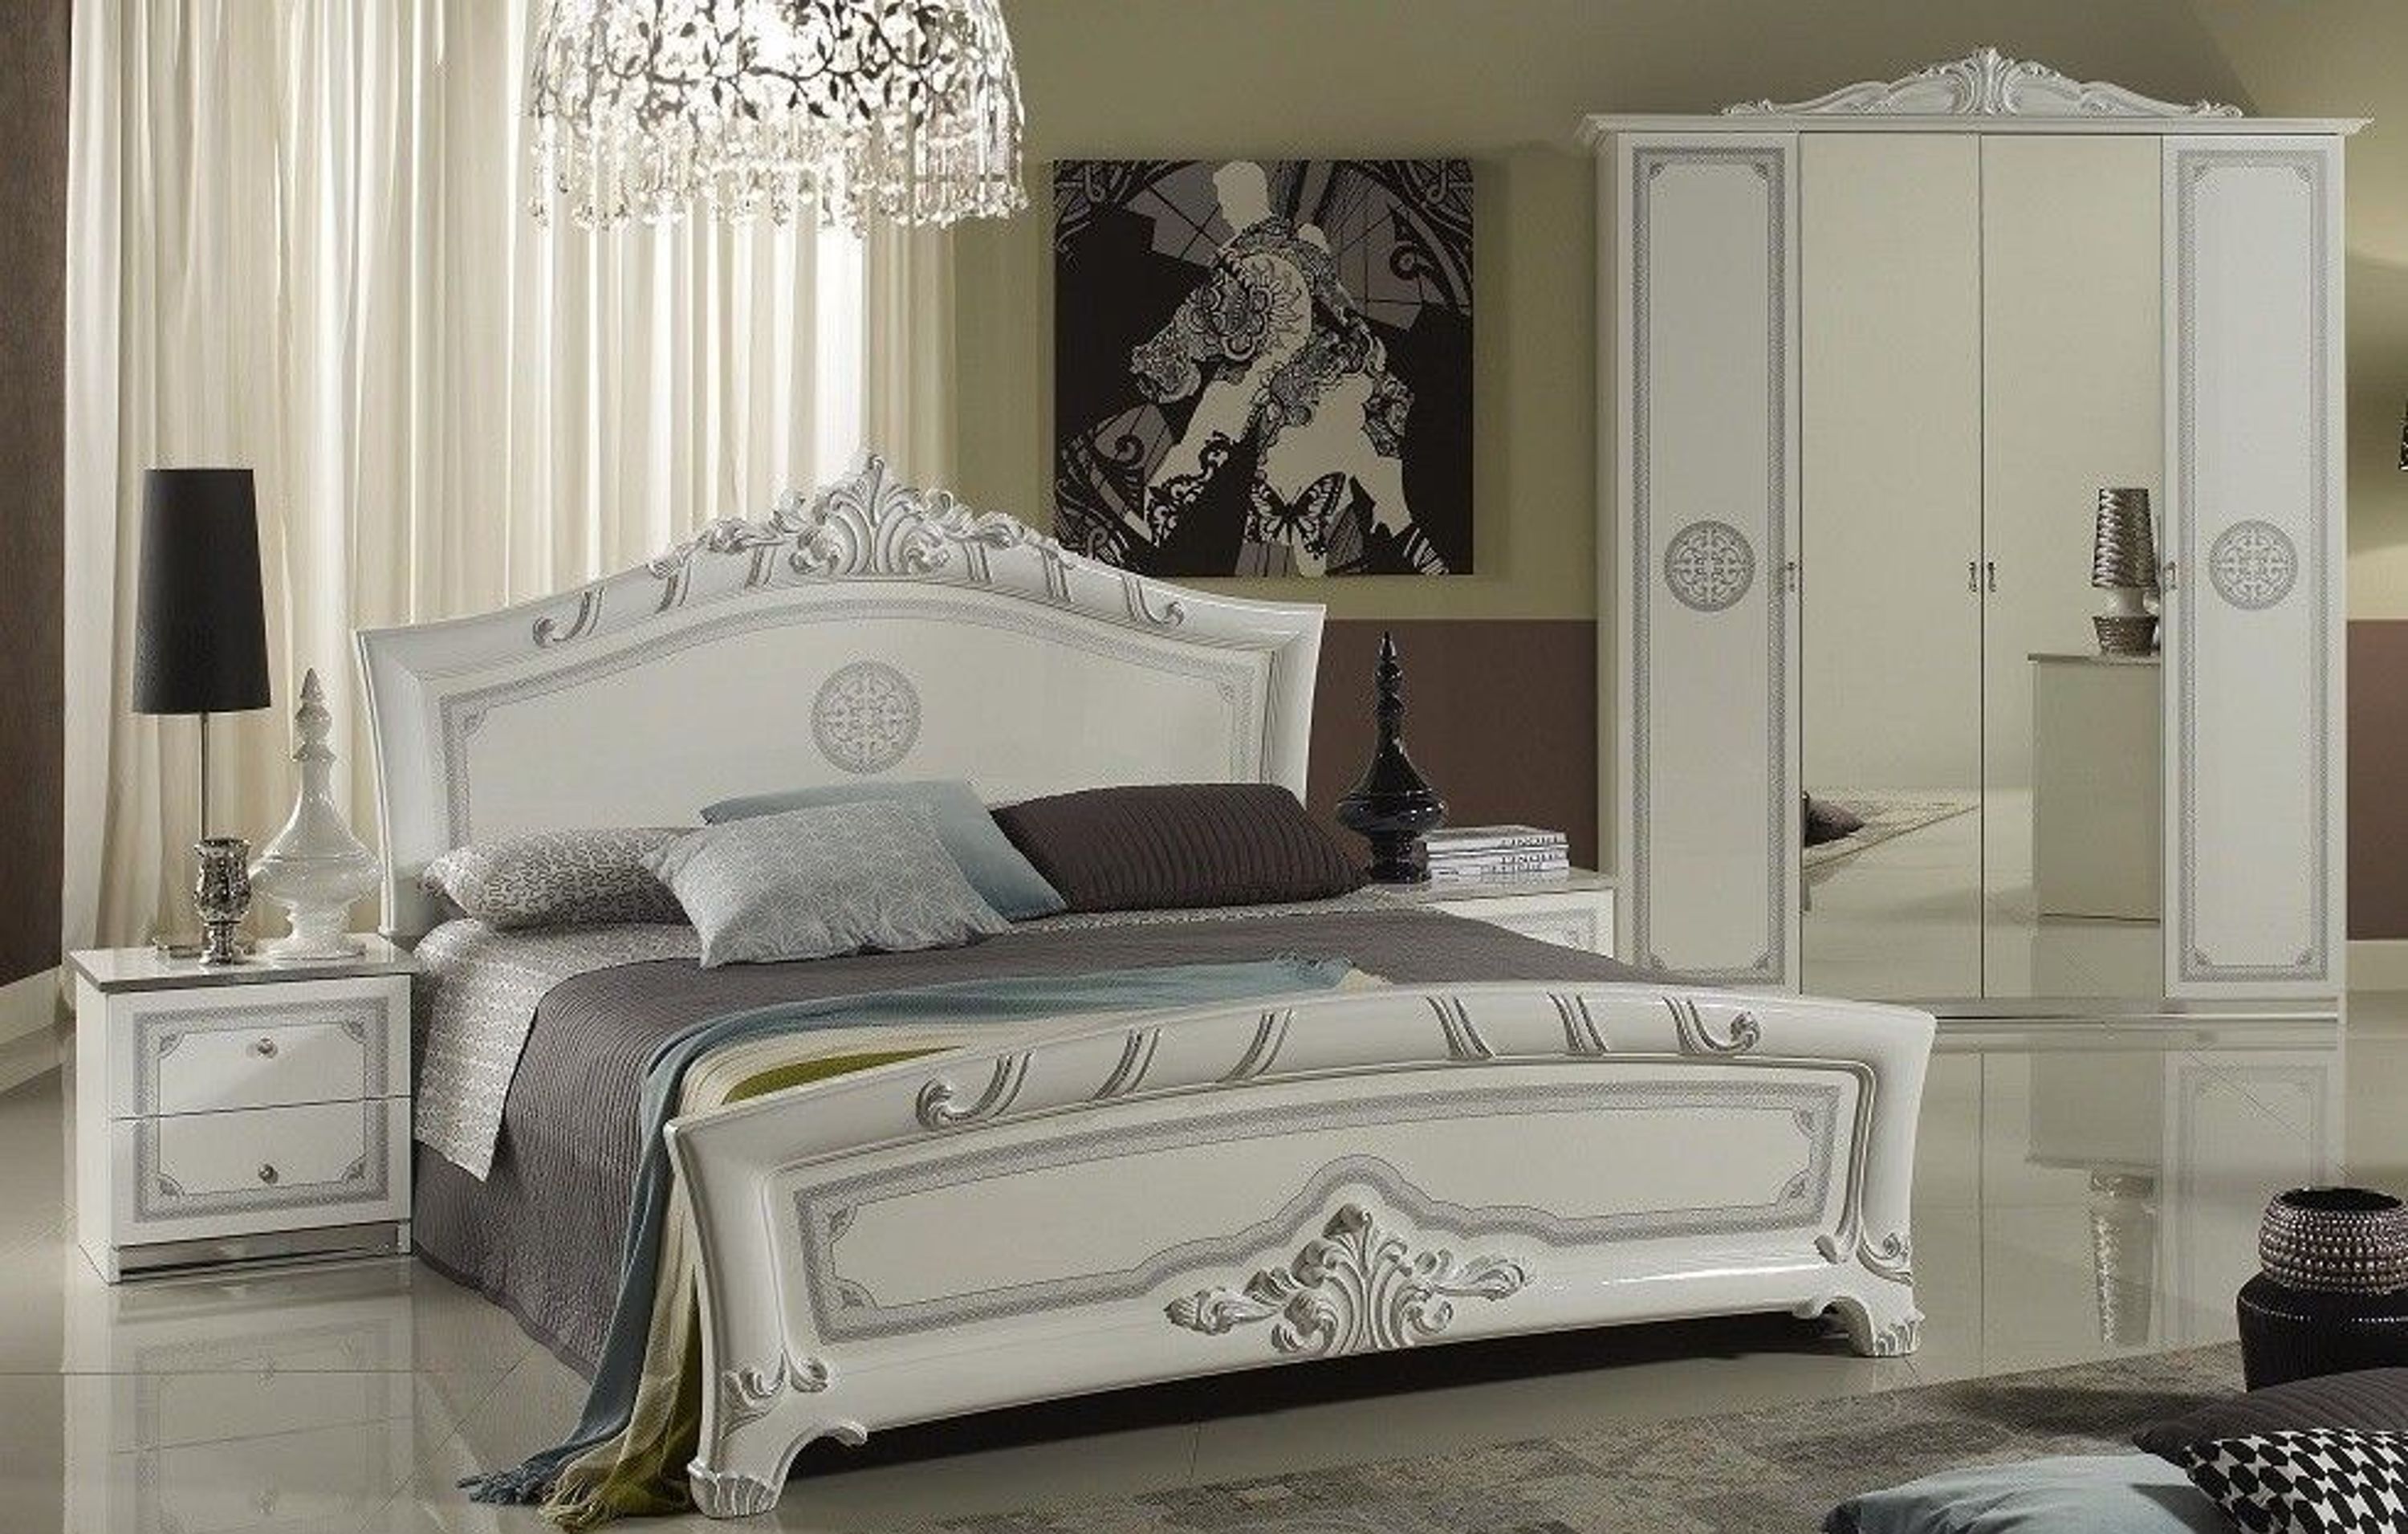 Schlafzimmer Great in weiss silber klassische Design 4tlg kaufen bei